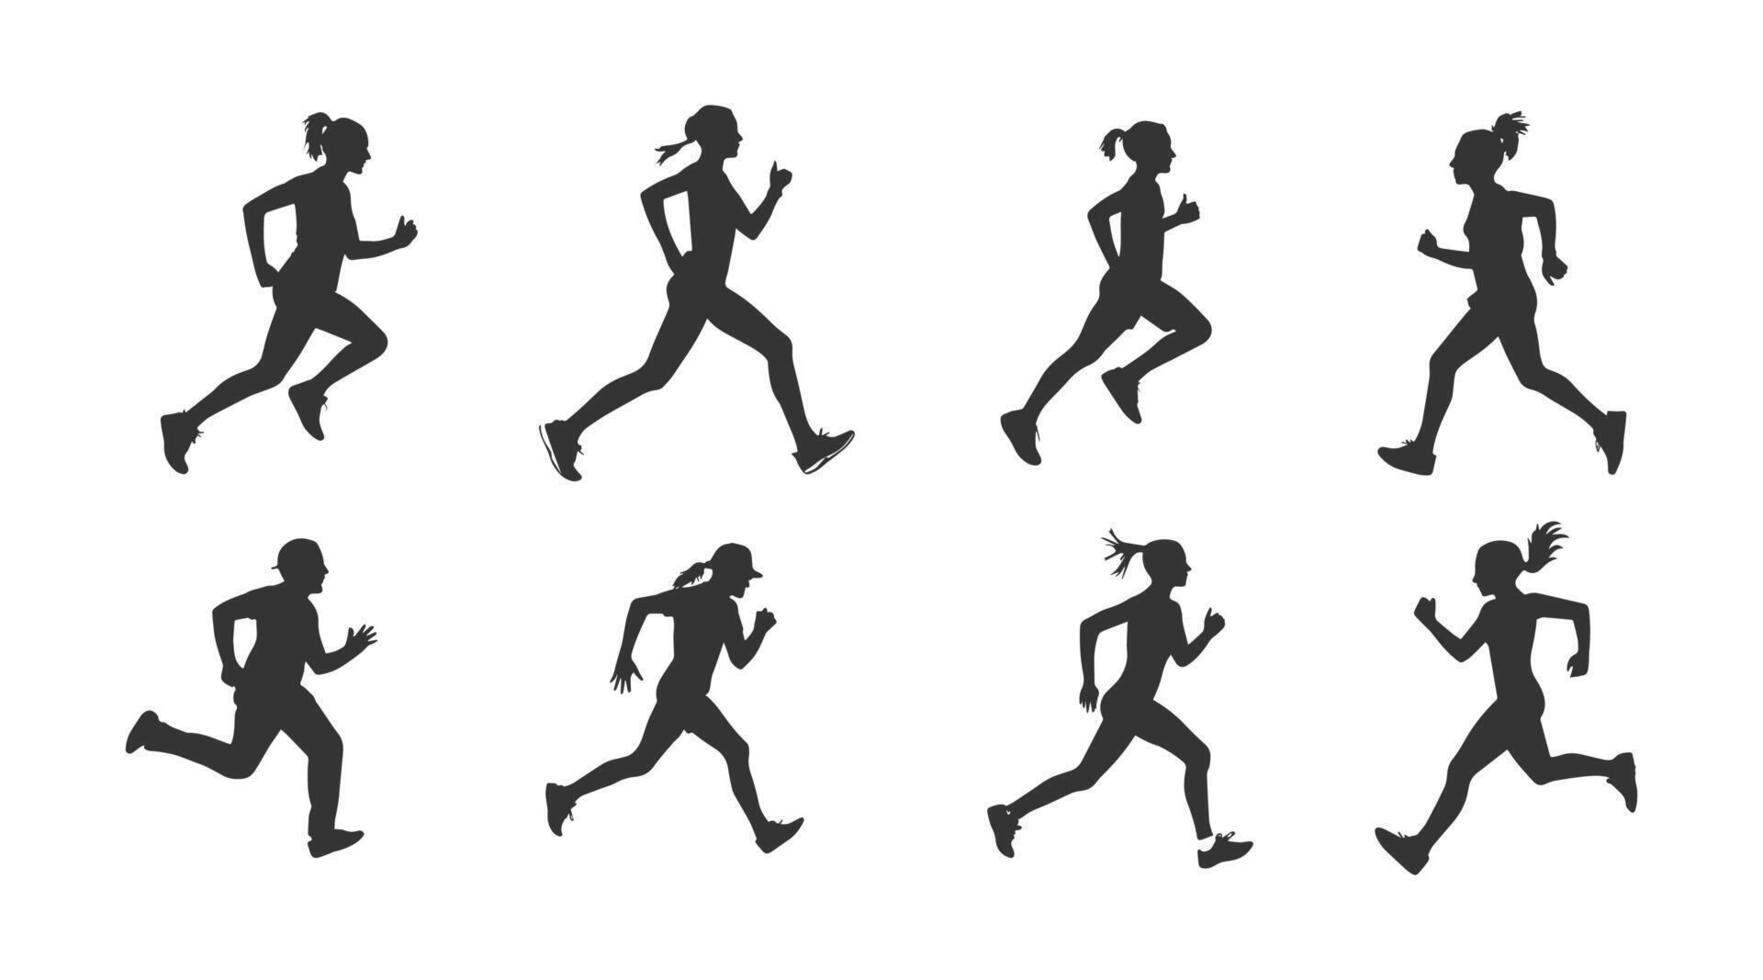 reeks van silhouetten van rennen atleten vector